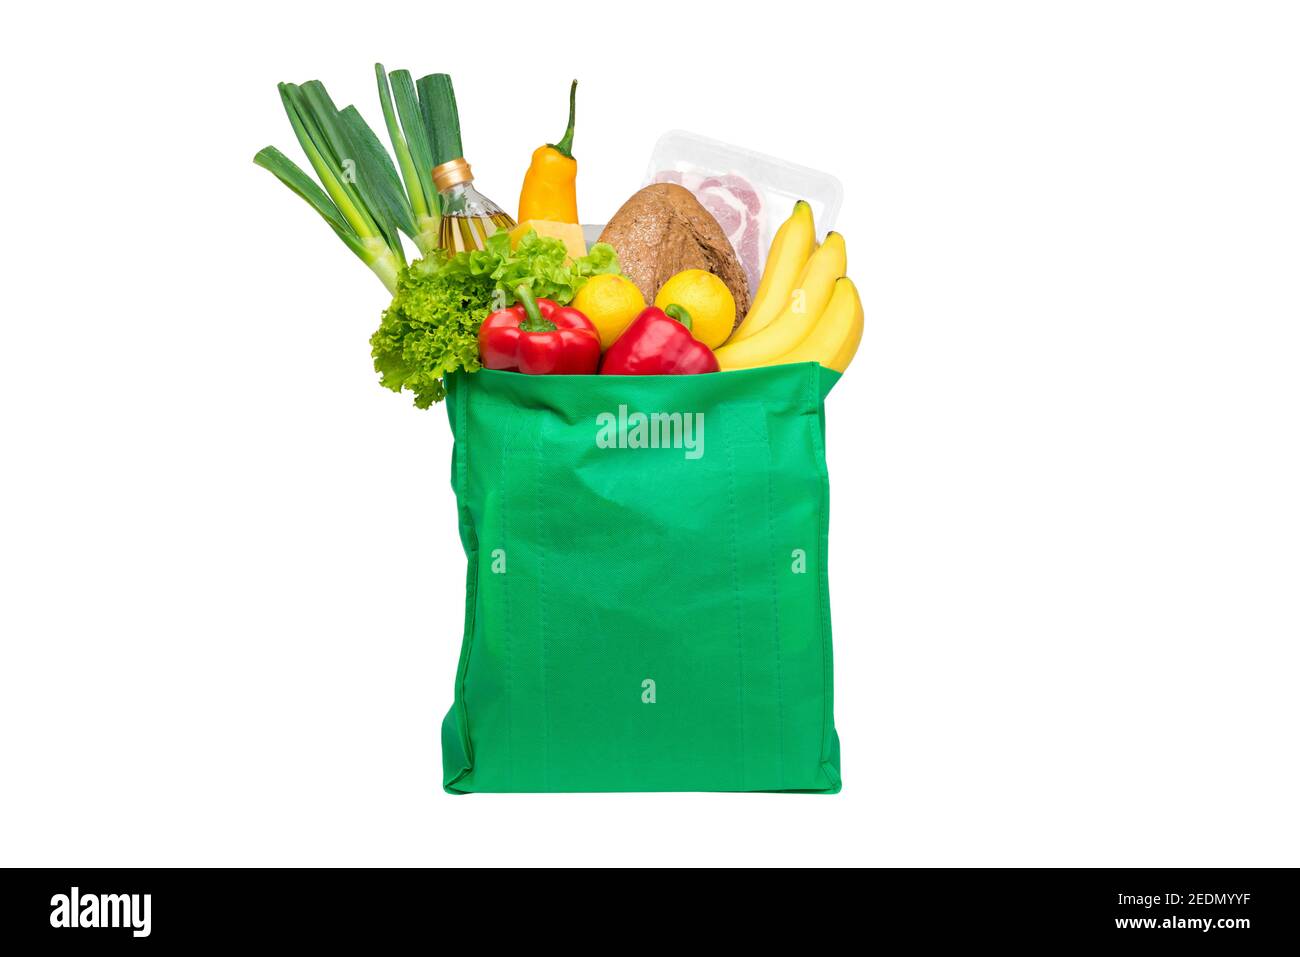 Lebensmittel und Lebensmittel in grüner, umweltfreundlicher, wiederverwendbarer Einkaufstasche, isoliert auf weißem Hintergrund Stockfoto